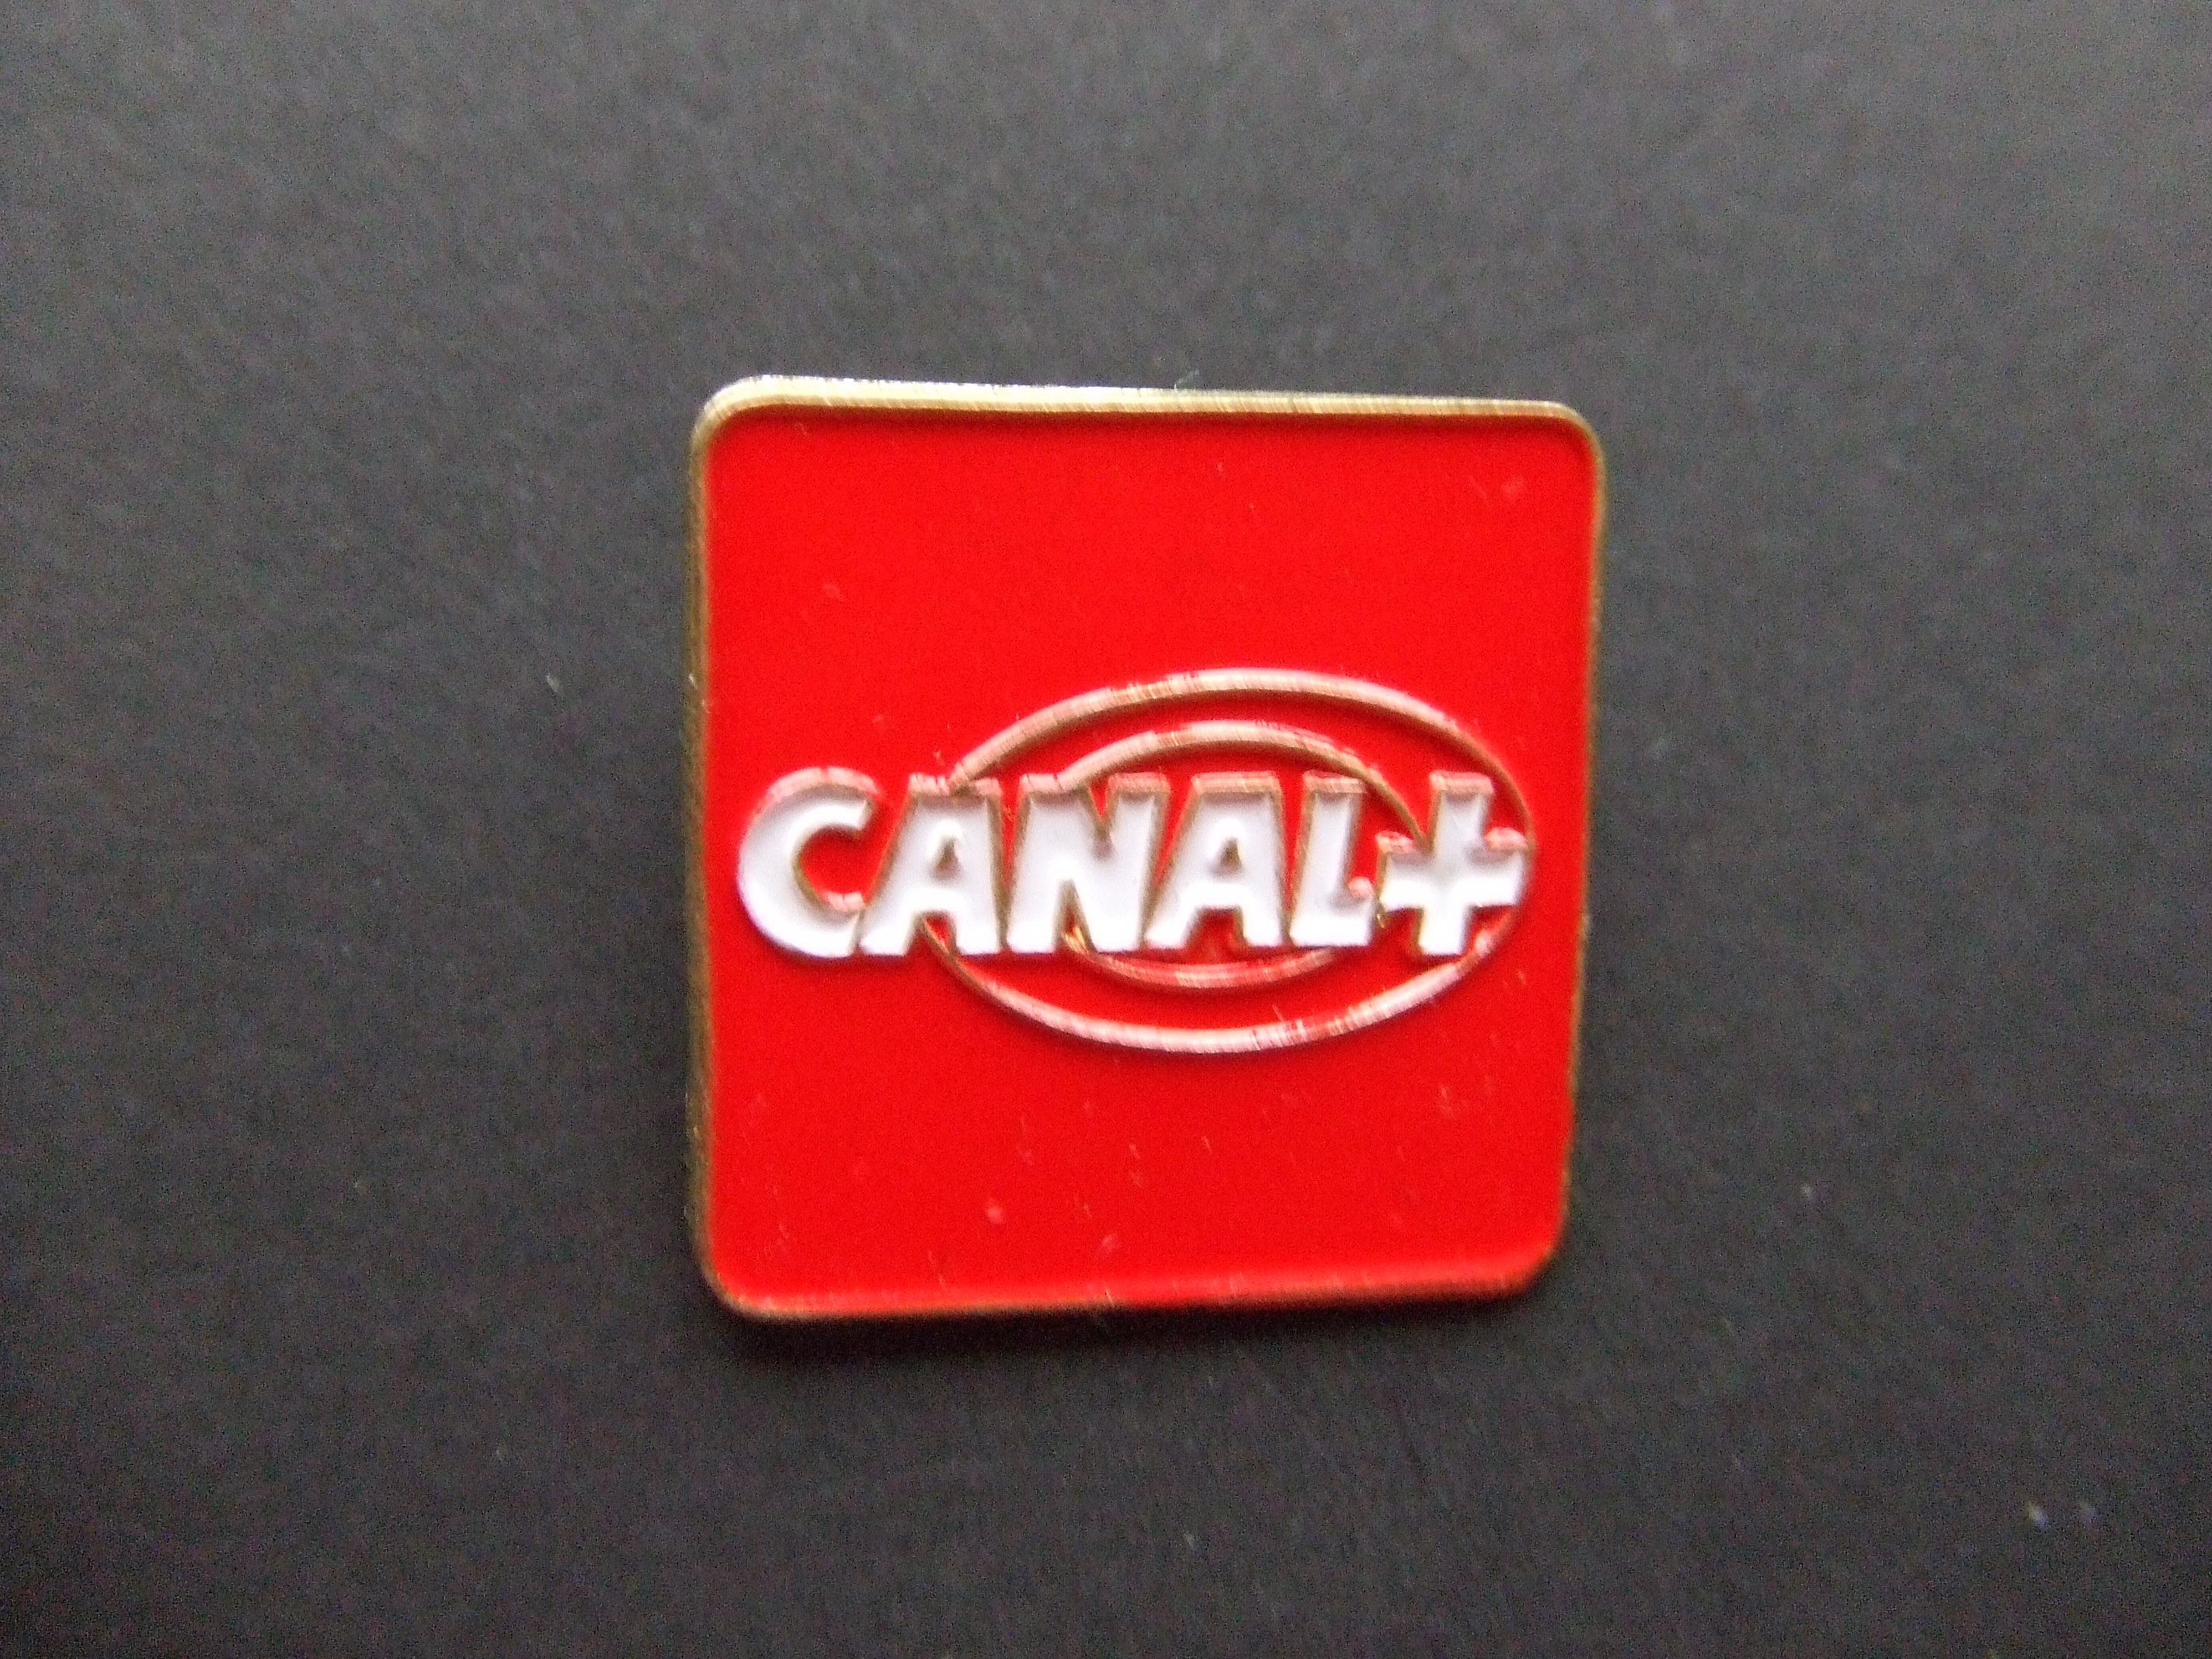 Canal + tv zender